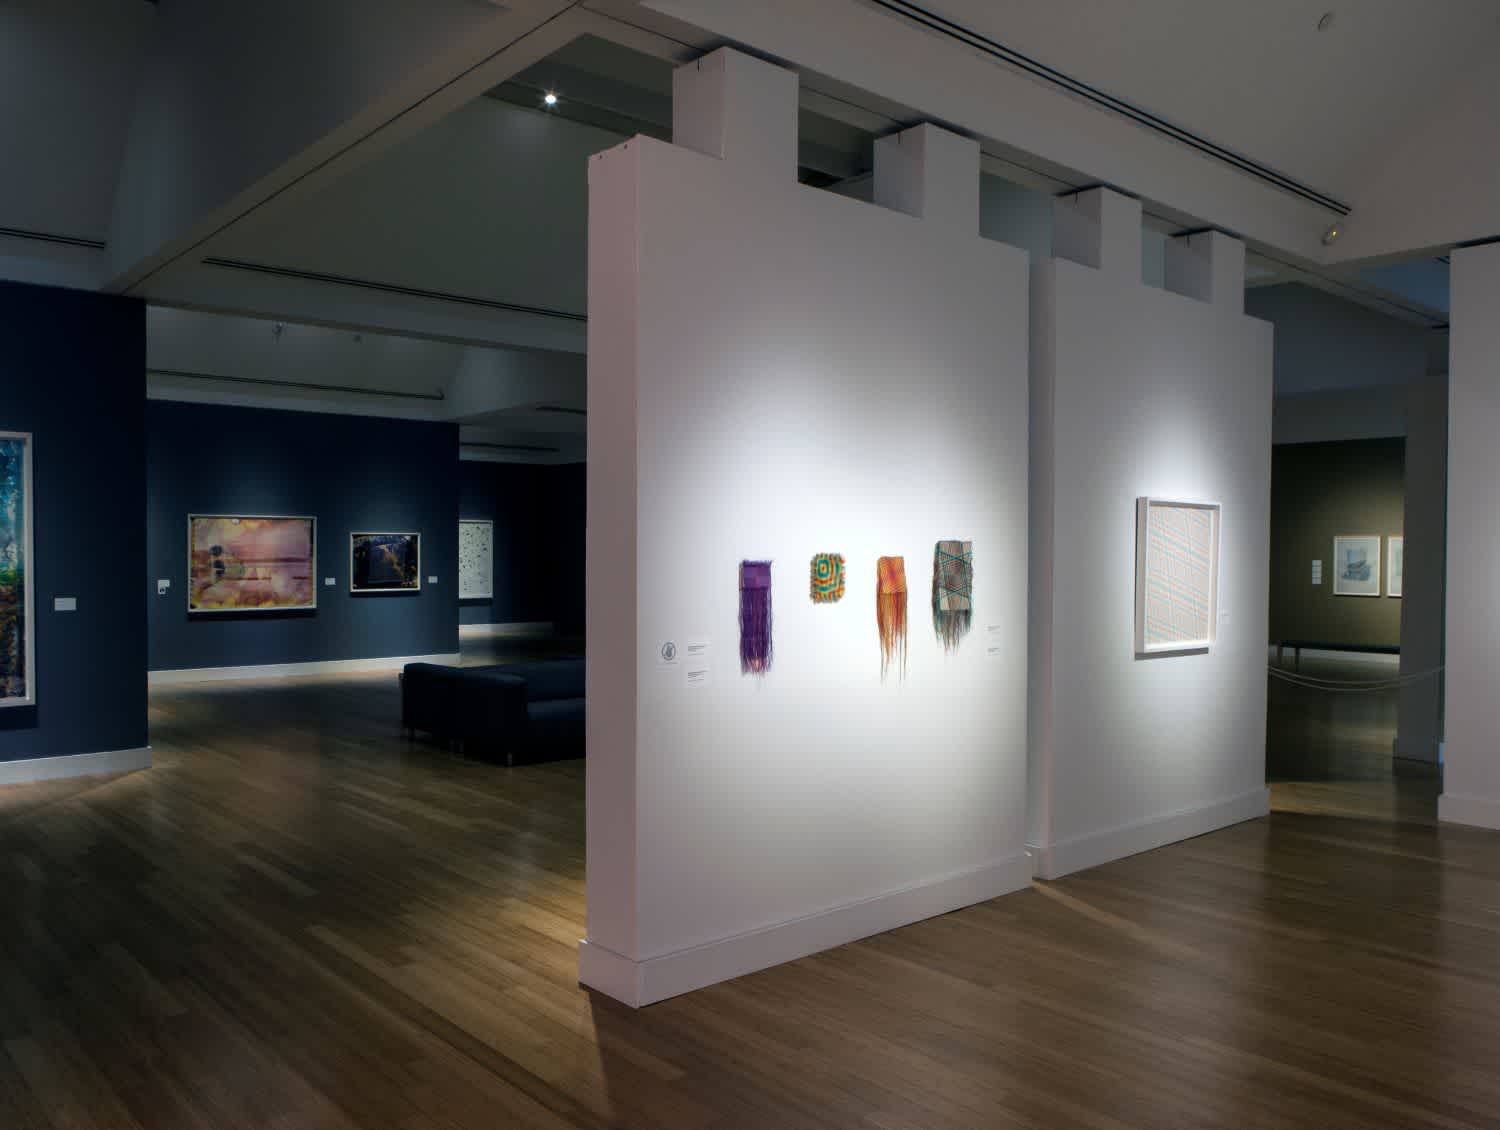 Installation image of the exhibition Gabriel Dawe: Plexus No 28 at the Virginia Museum of Contemporary Art (Virginia MOCA).